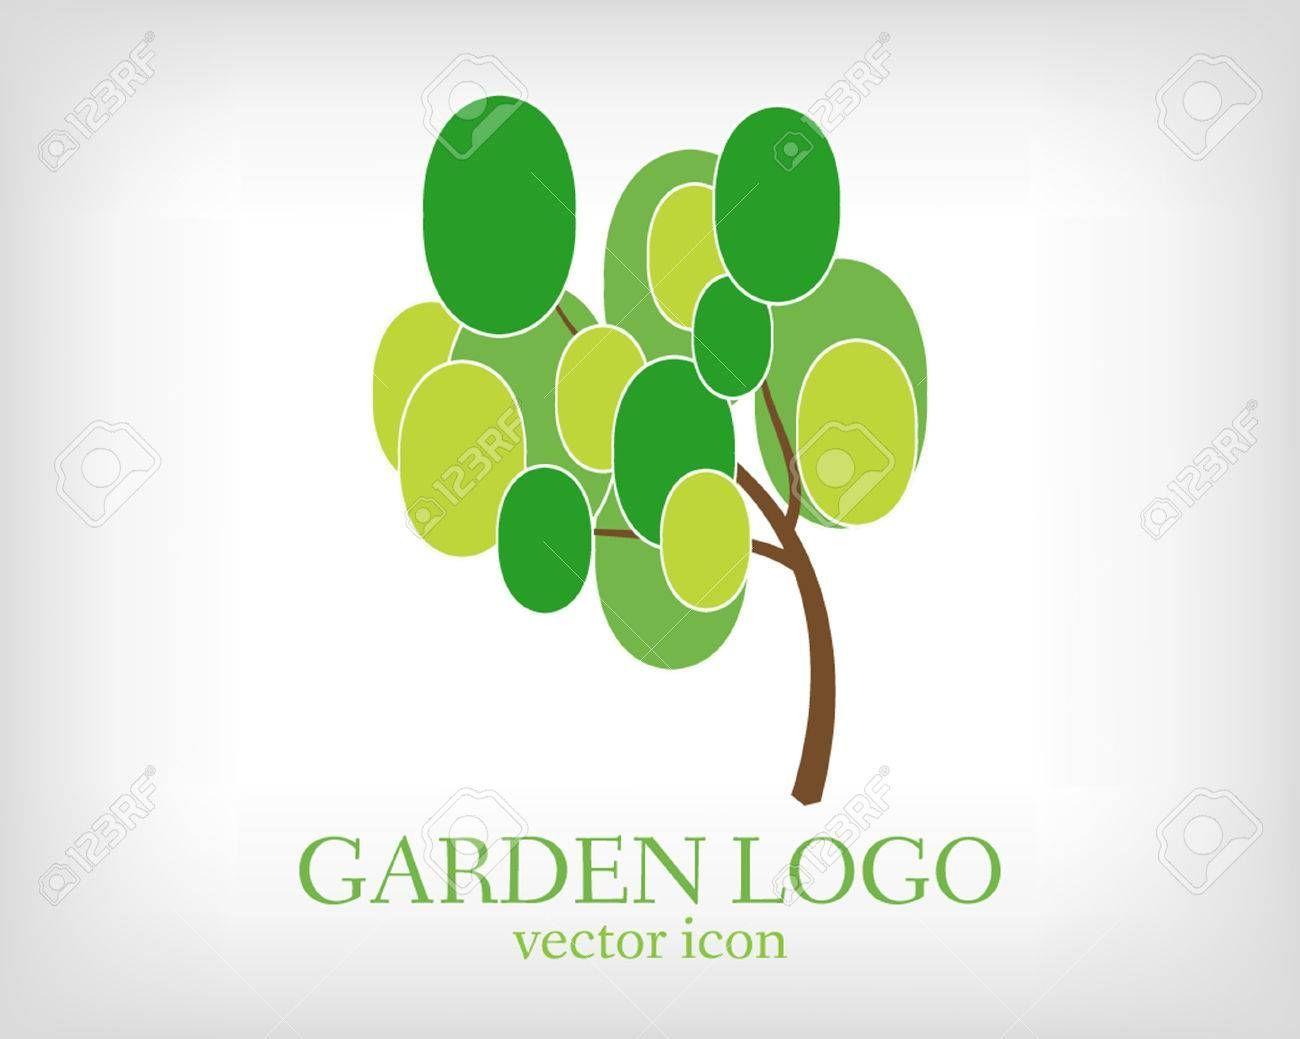 Green Cute Logo - Cute Creative Garden Logo at Creative Landscapes